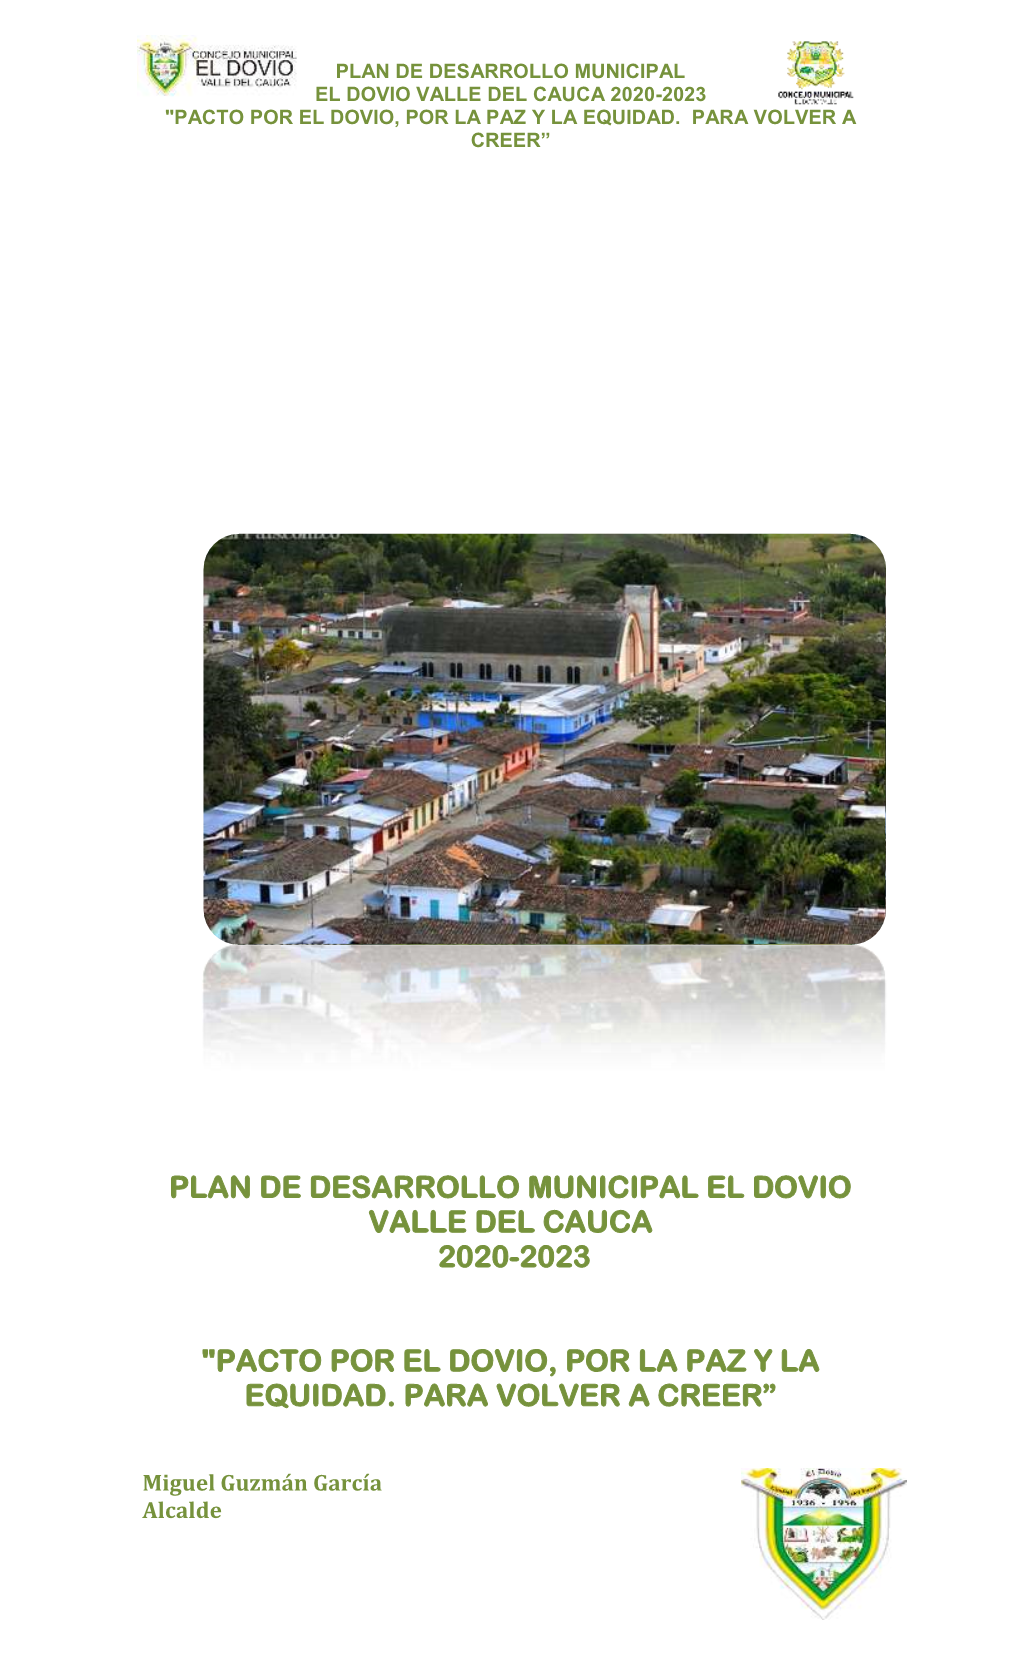 Plan De Desarrollo Municipal El Dovio Valle Del Cauca 2020-2023 "Pacto Por El Dovio, Por La Paz Y La Equidad